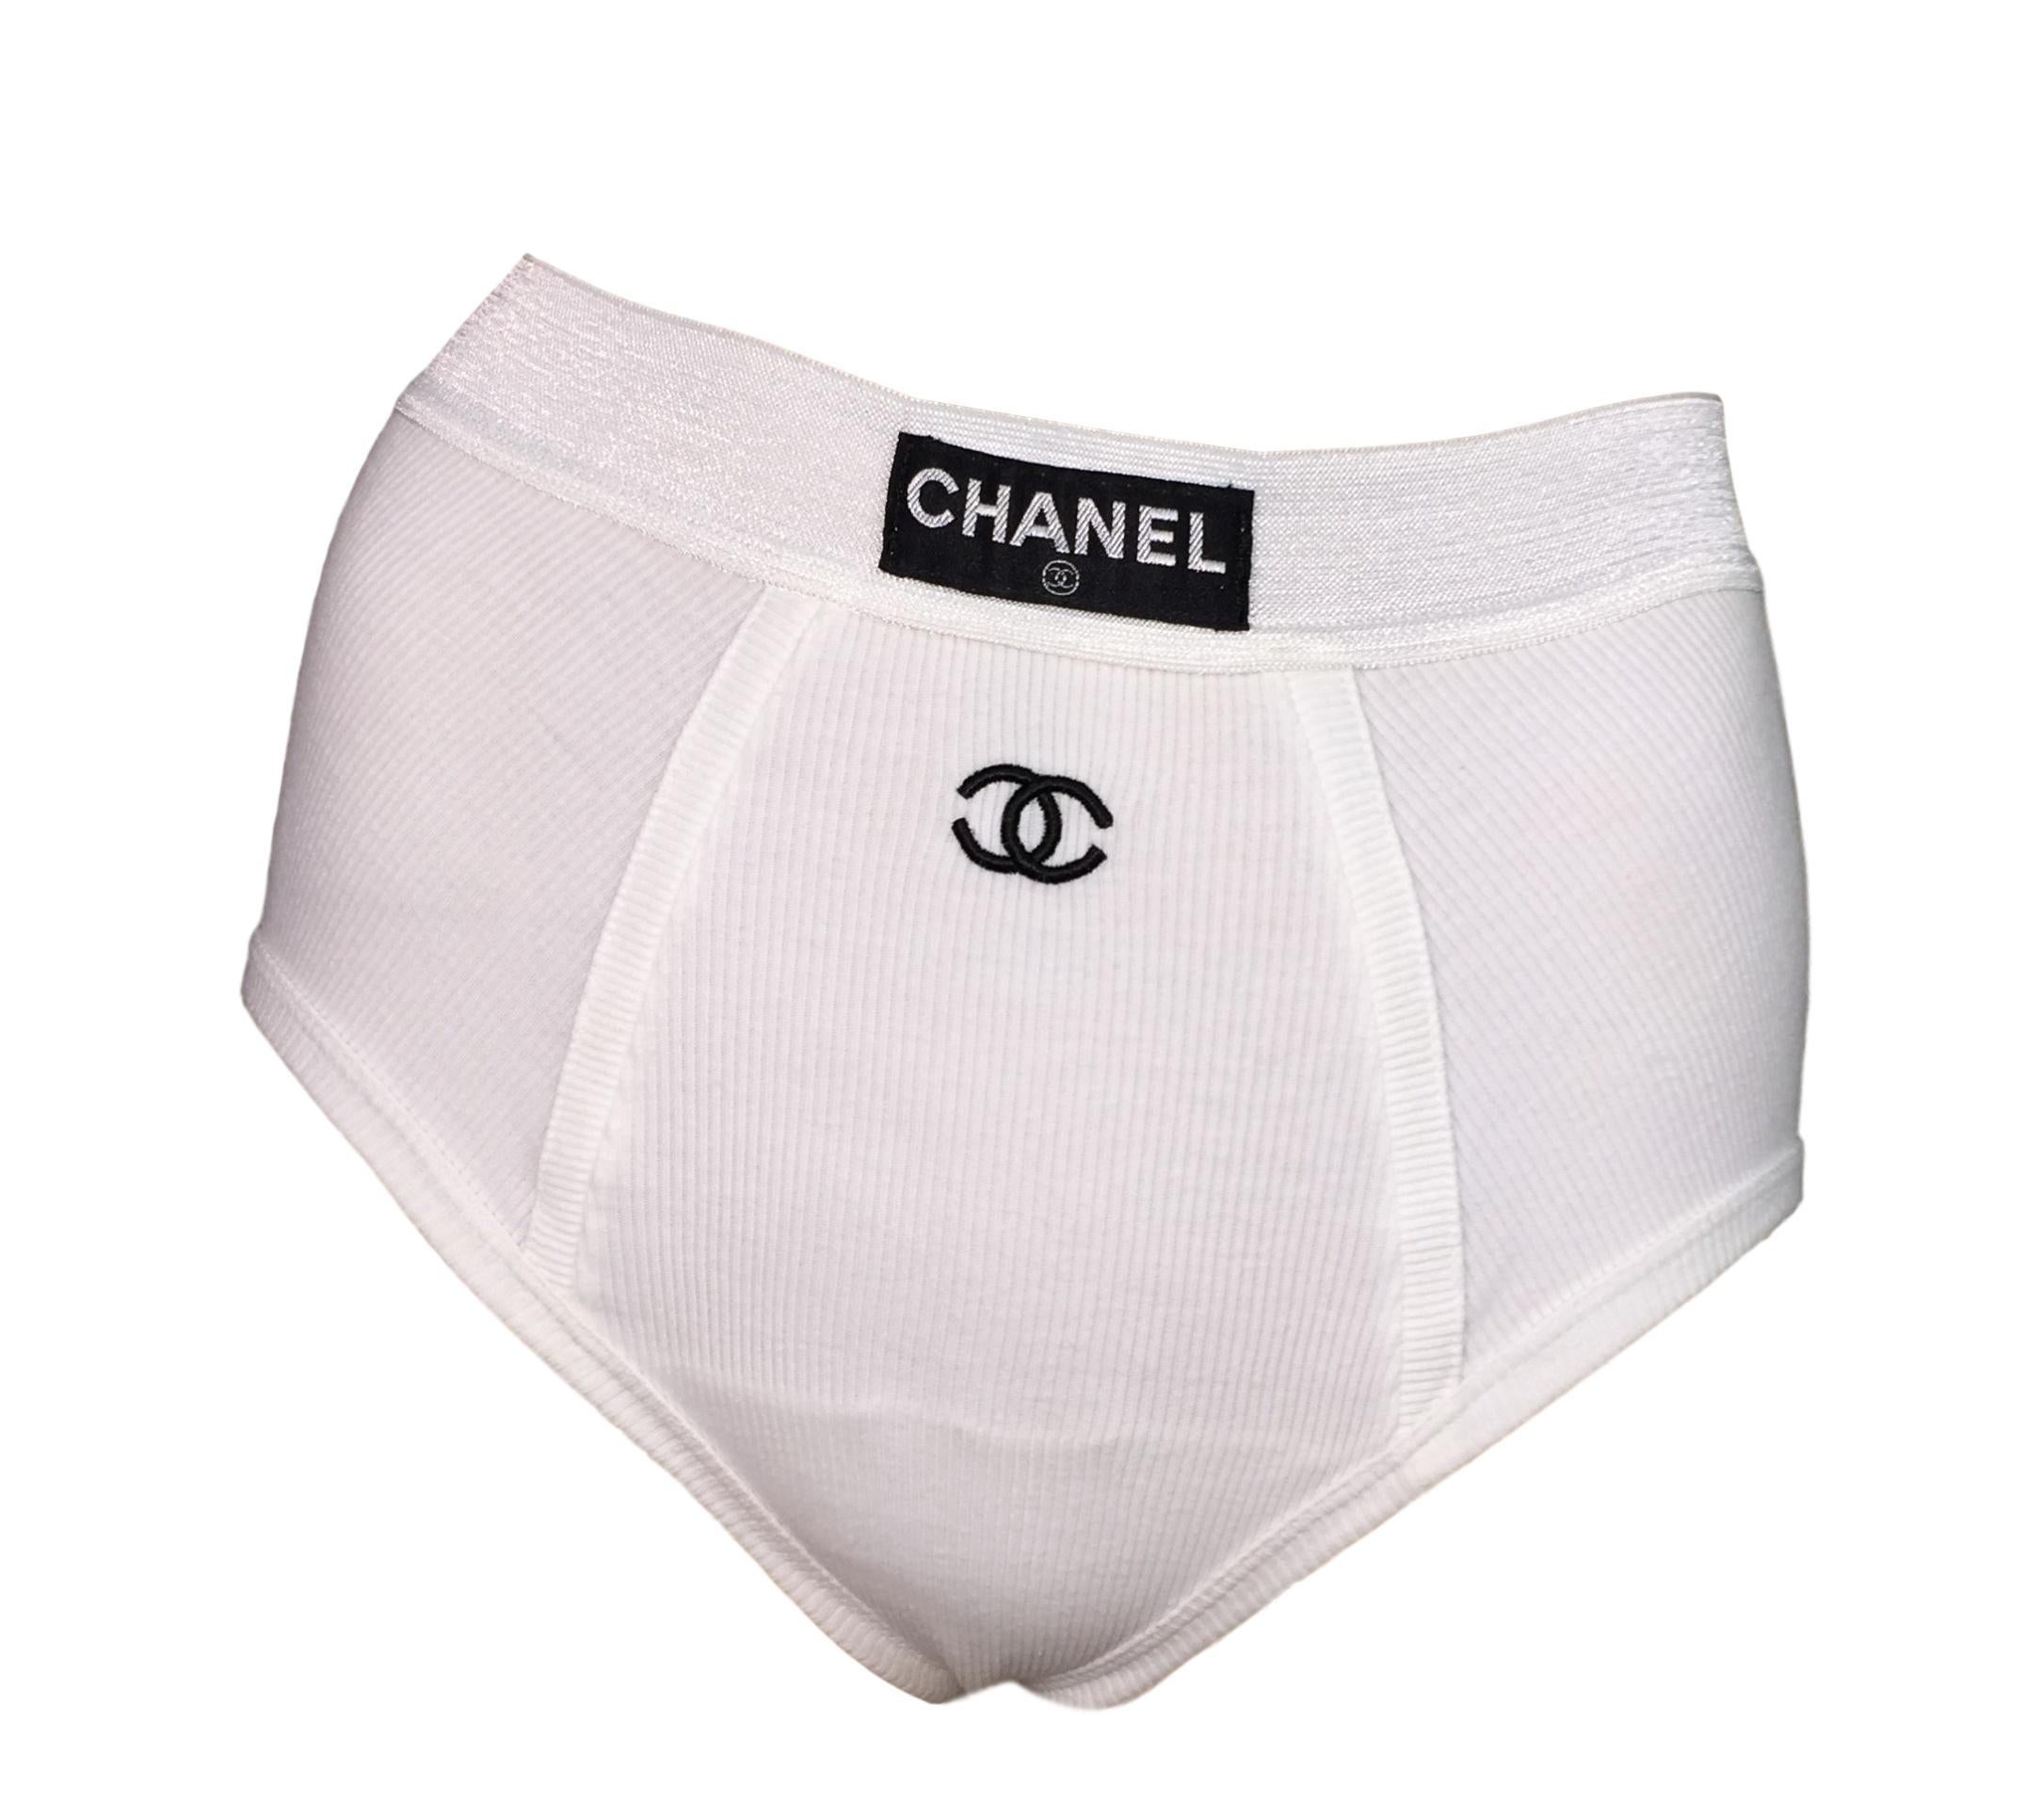 chanel underwear